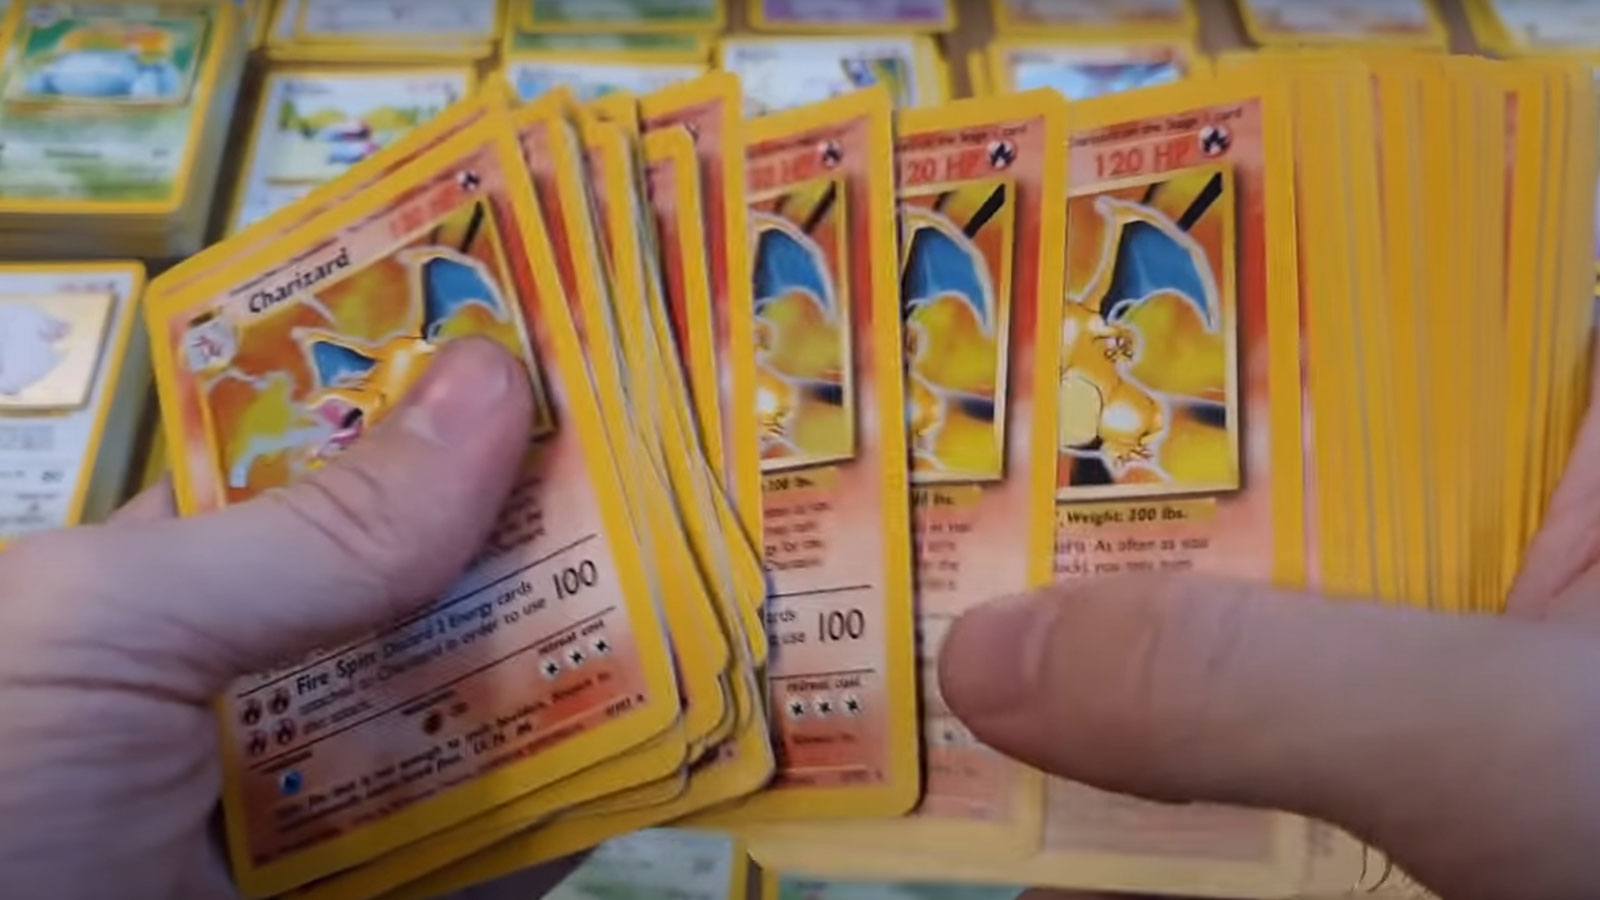 Cartes Pokemon : quelles sont les cartes à collectionner ?